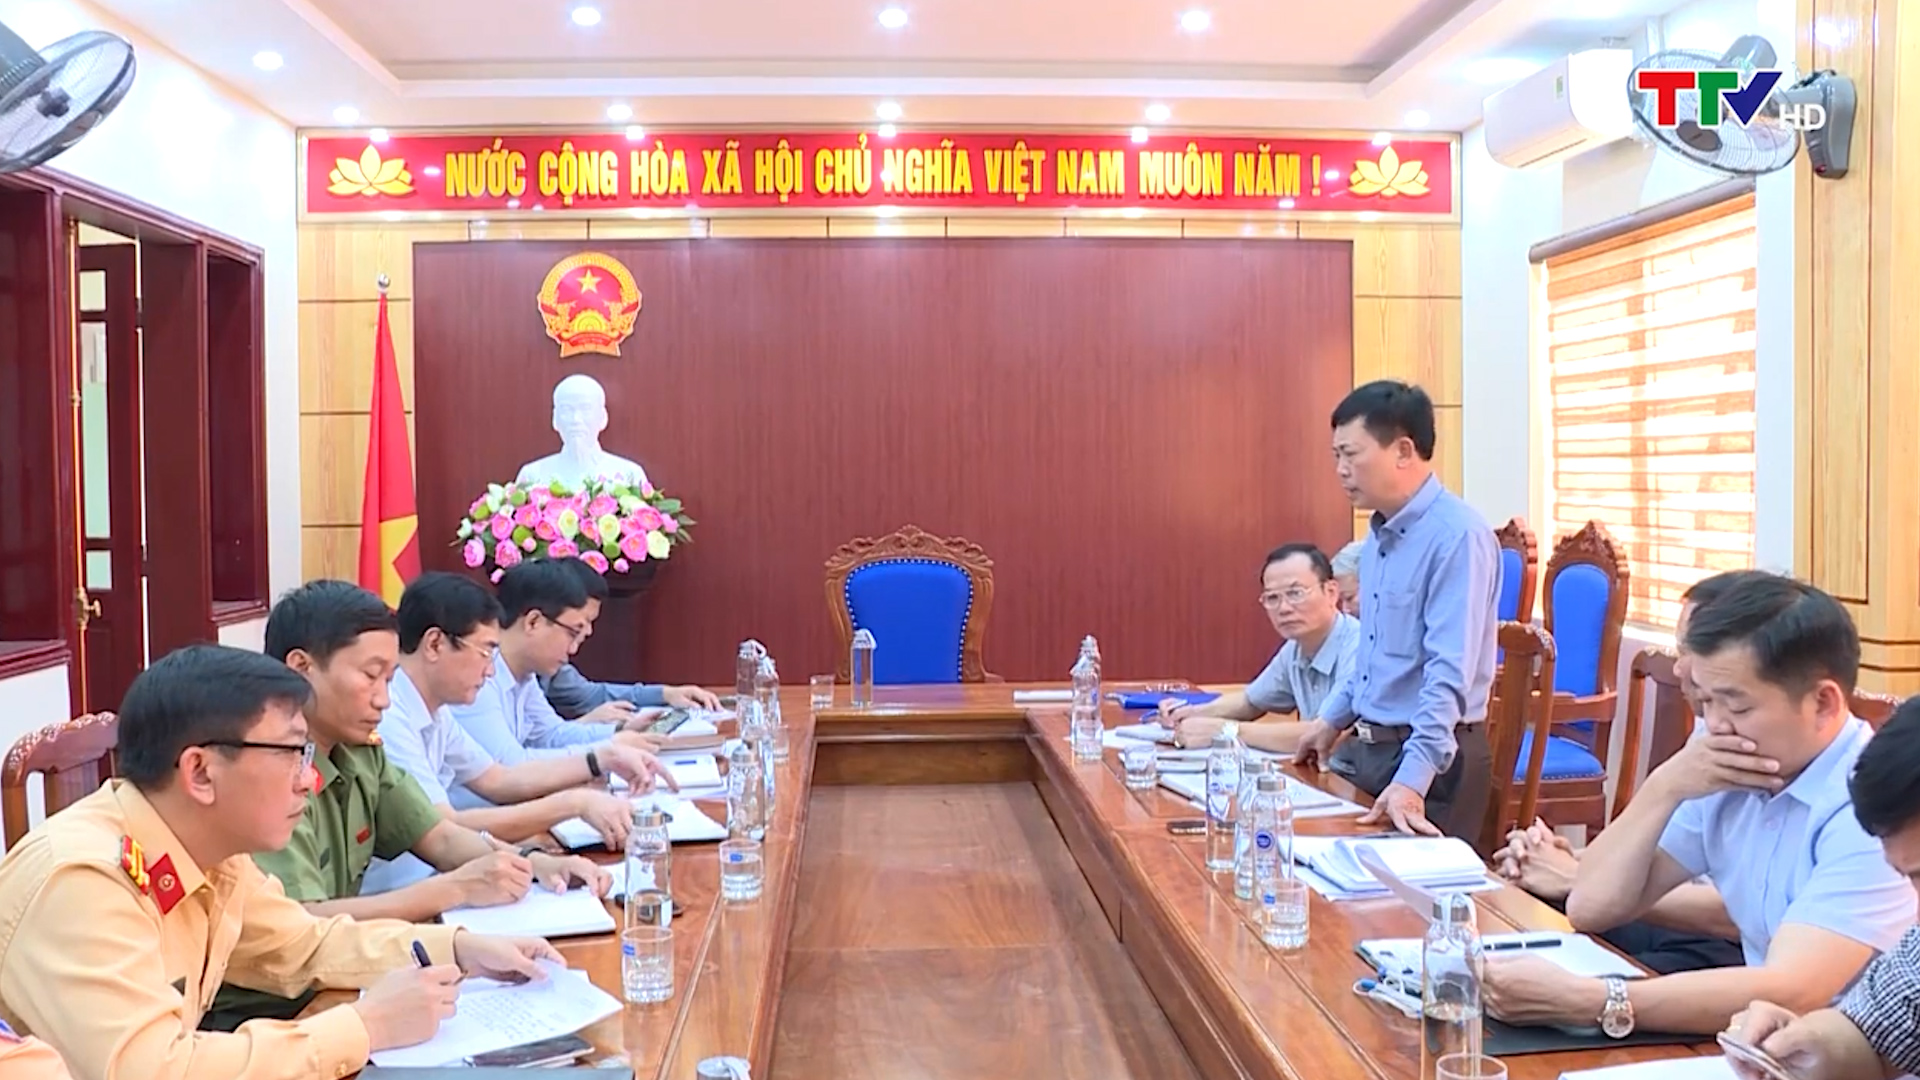 Huyện Yên Định cần nâng cao hiệu quả công tác đảm bảo trật tự an toàn giao thông - Ảnh 2.